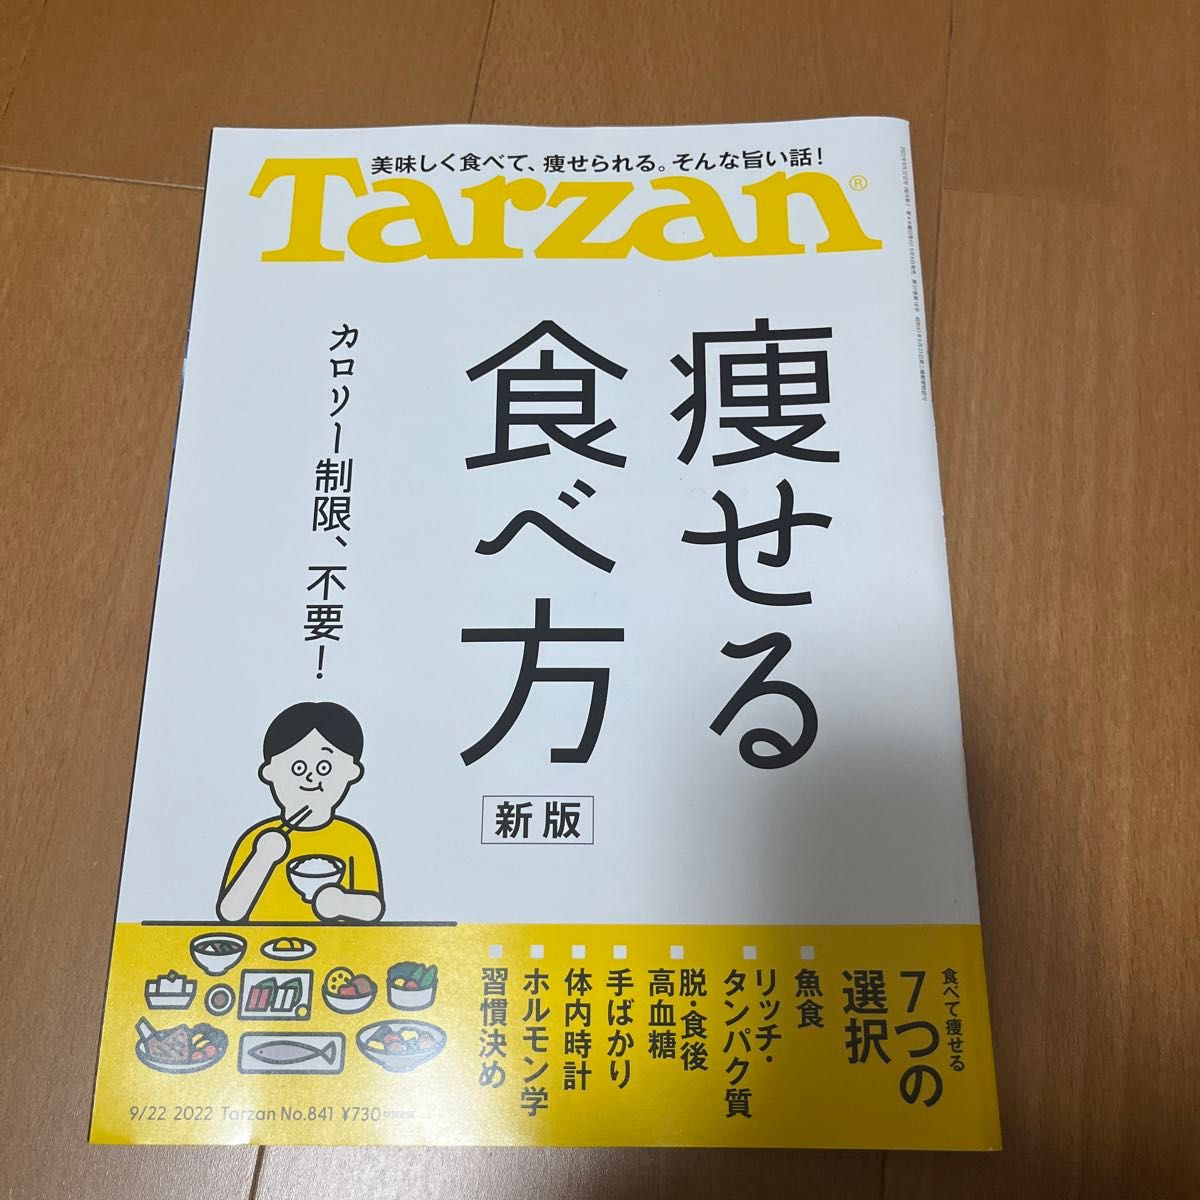 Tarzan 痩せる食べ方